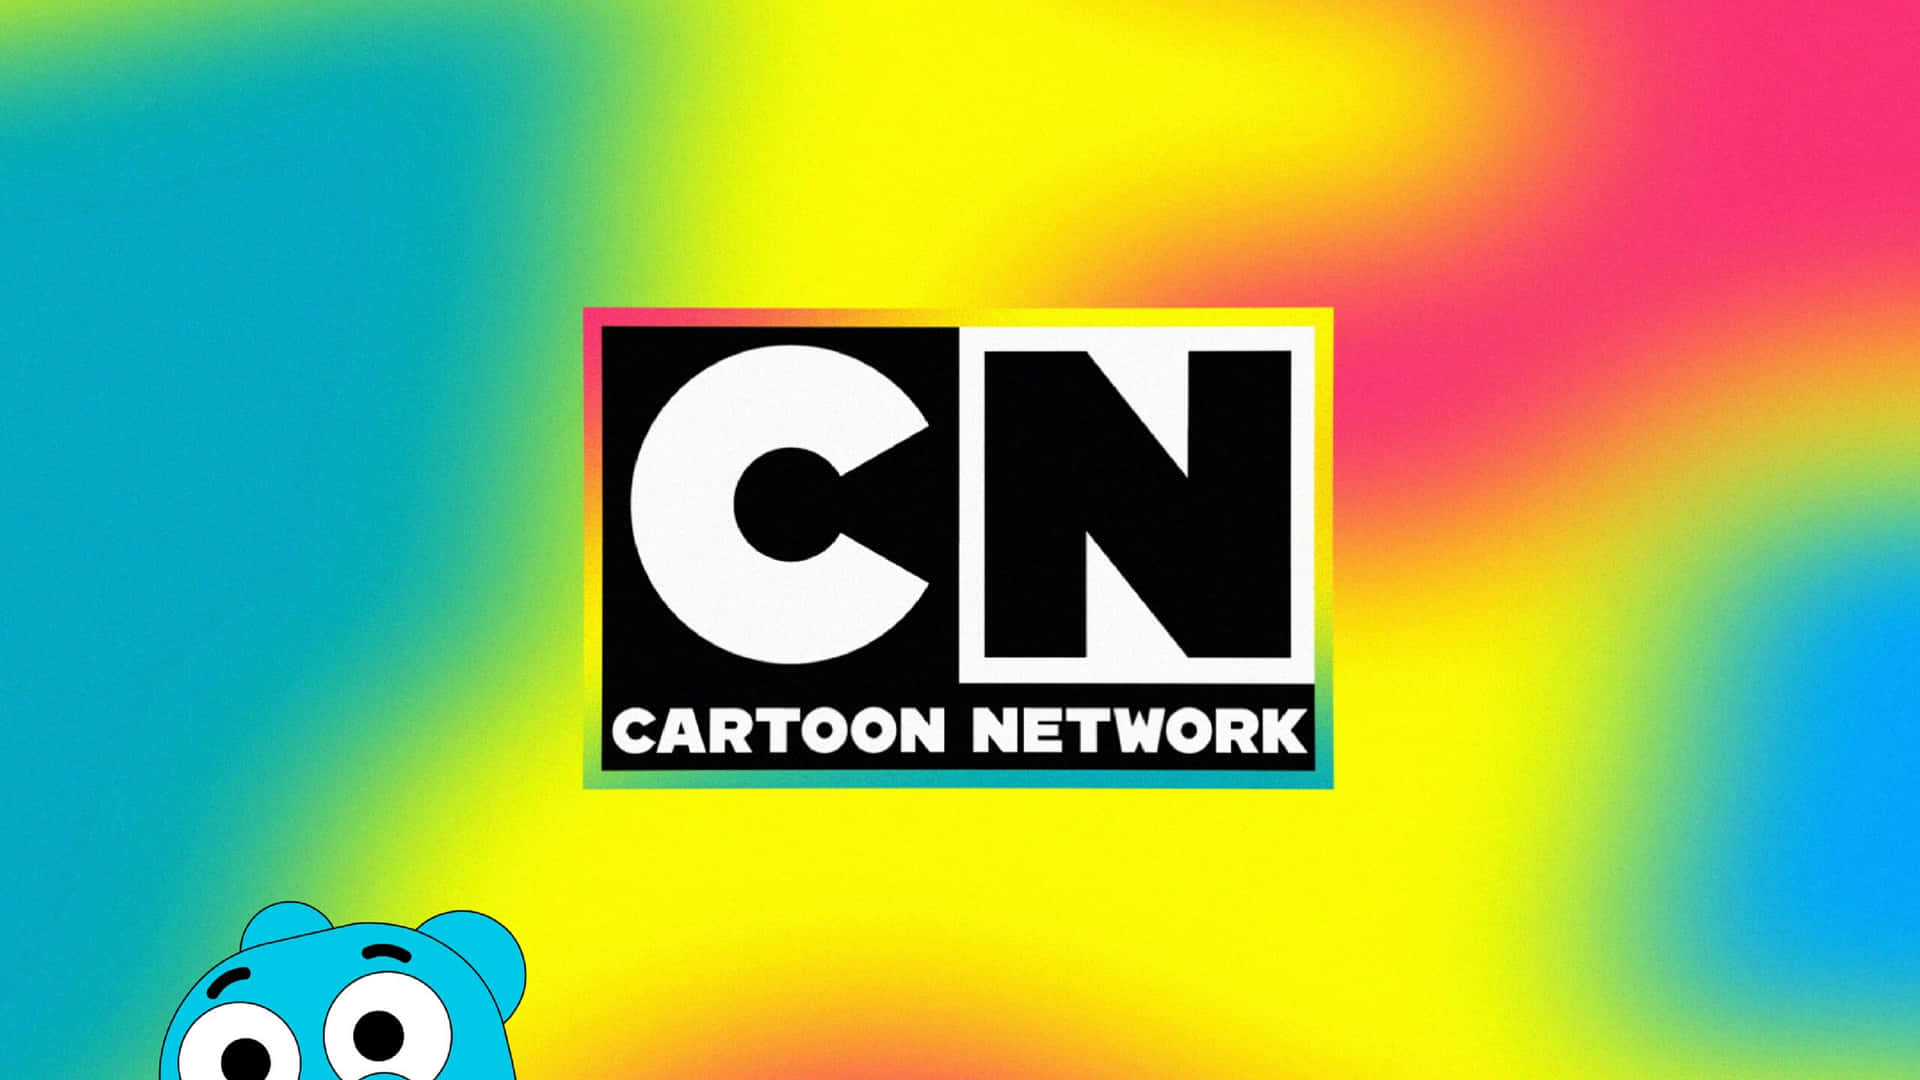 Imagensdo Cartoon Network